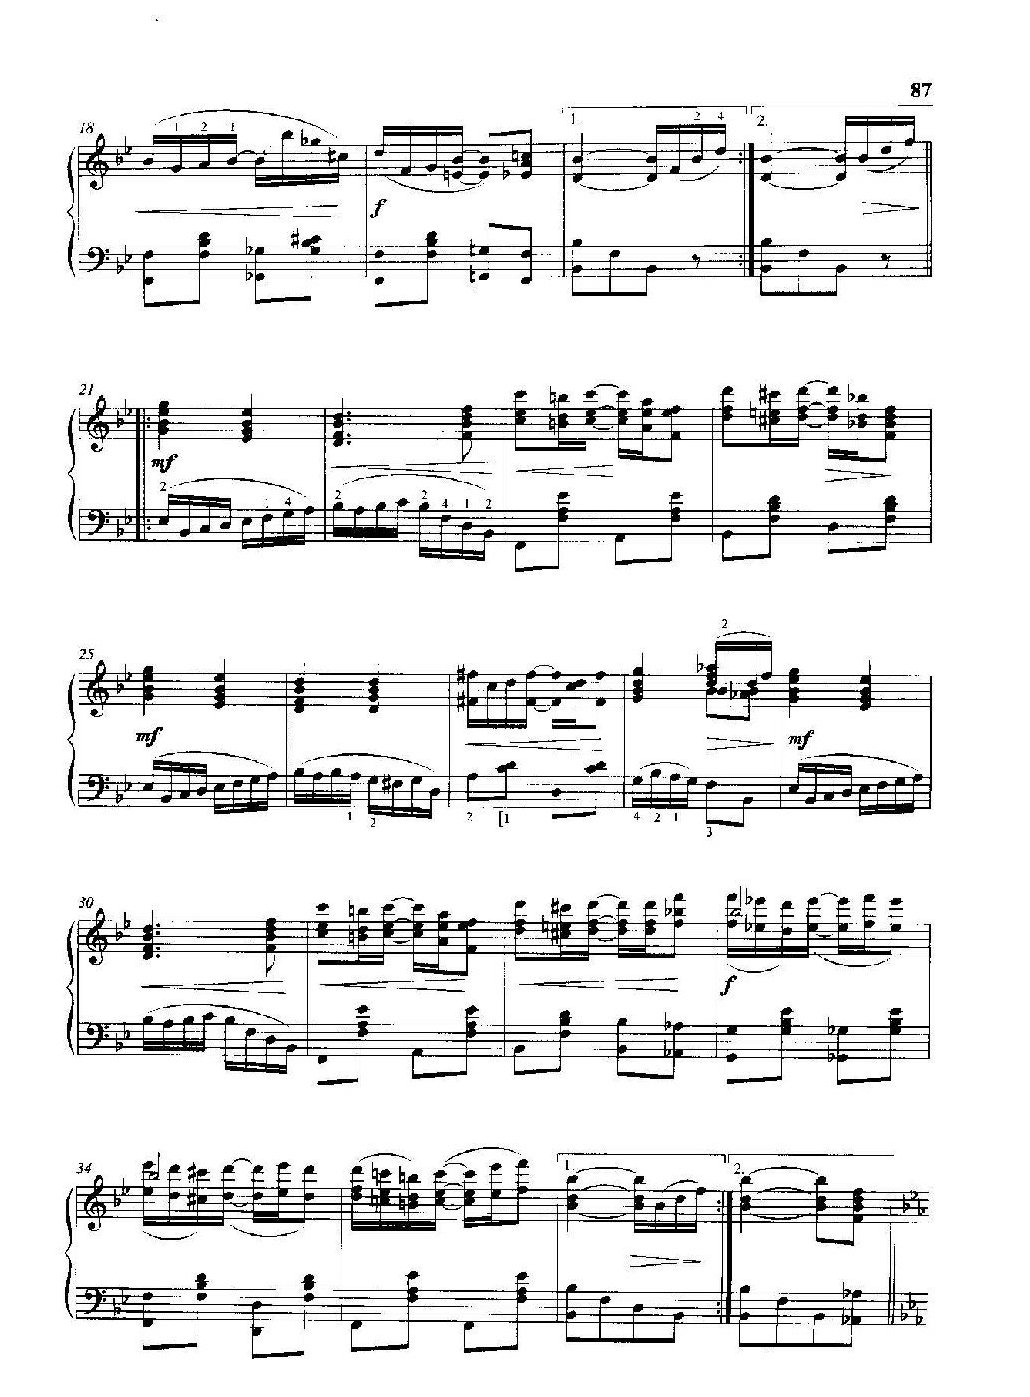 雷格泰姆钢琴乐谱《举世无双》雷格泰姆之王斯科特·乔普林